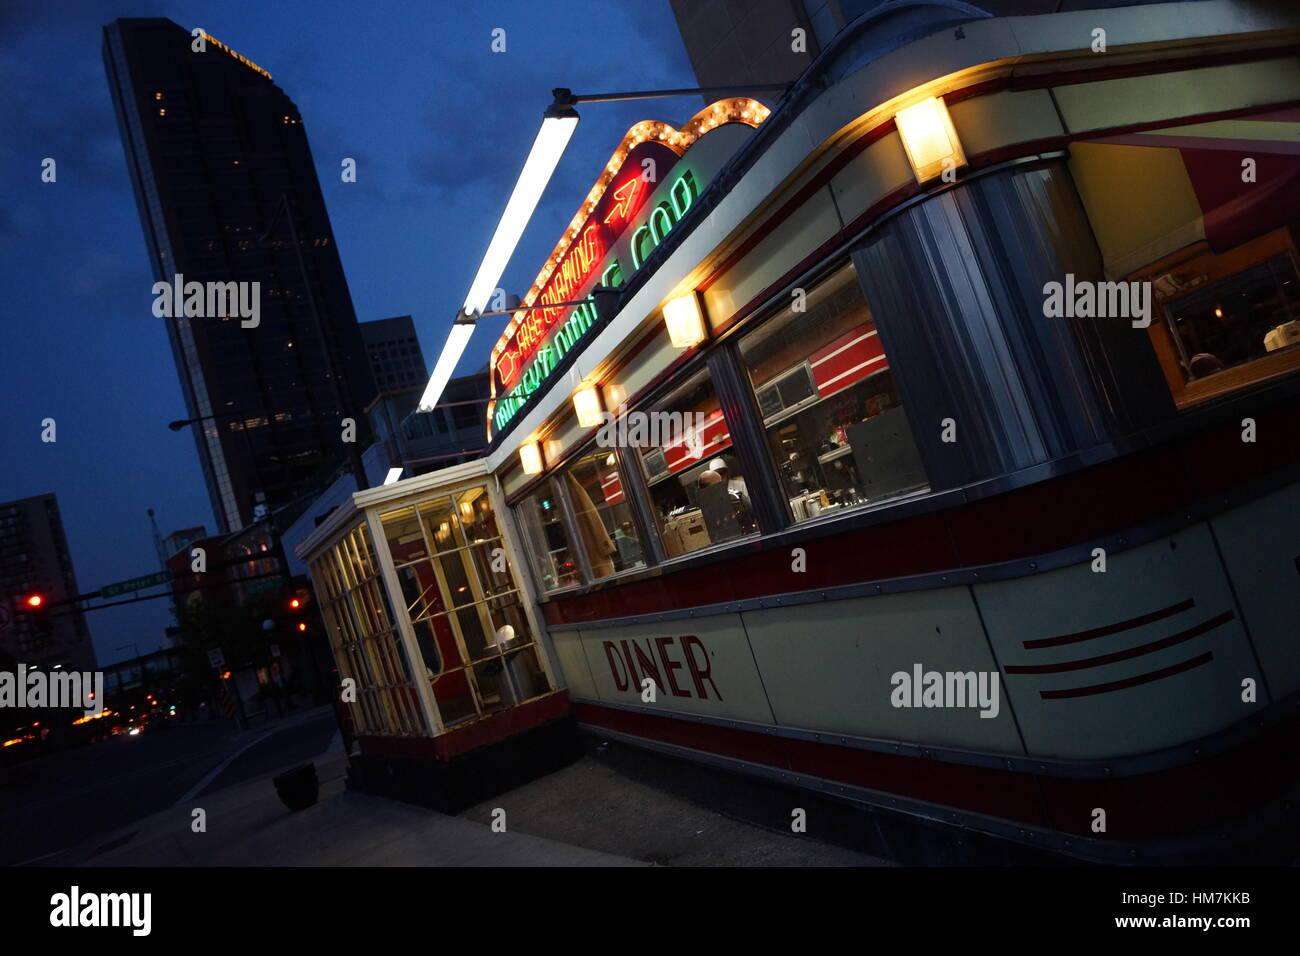 Vista exterior de una auténtica cena de comida rápida americana por la noche Foto de stock